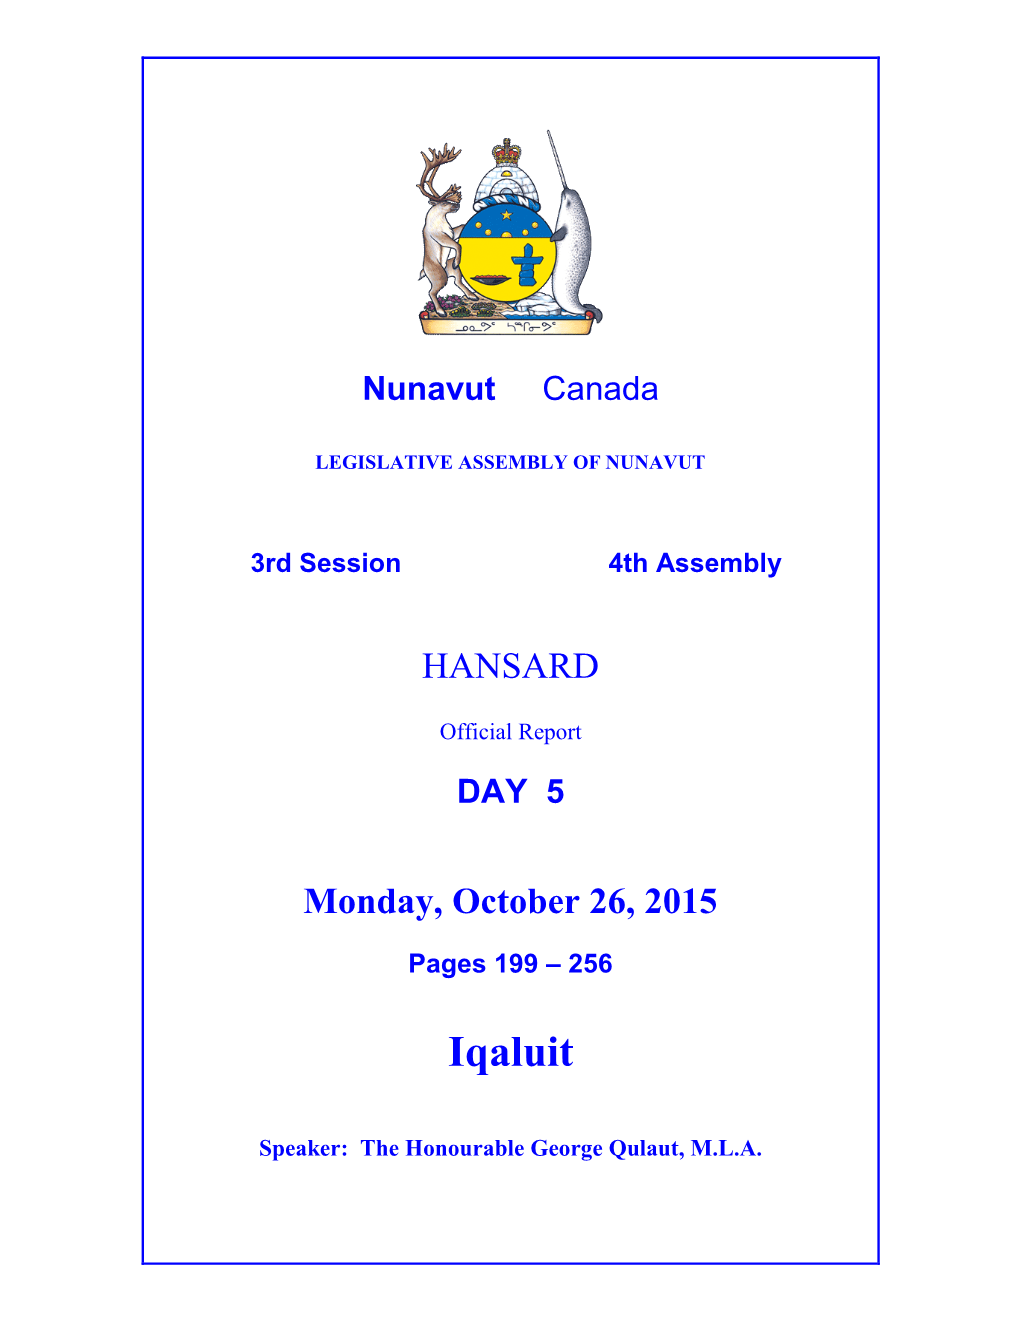 Nunavut Hansard 199